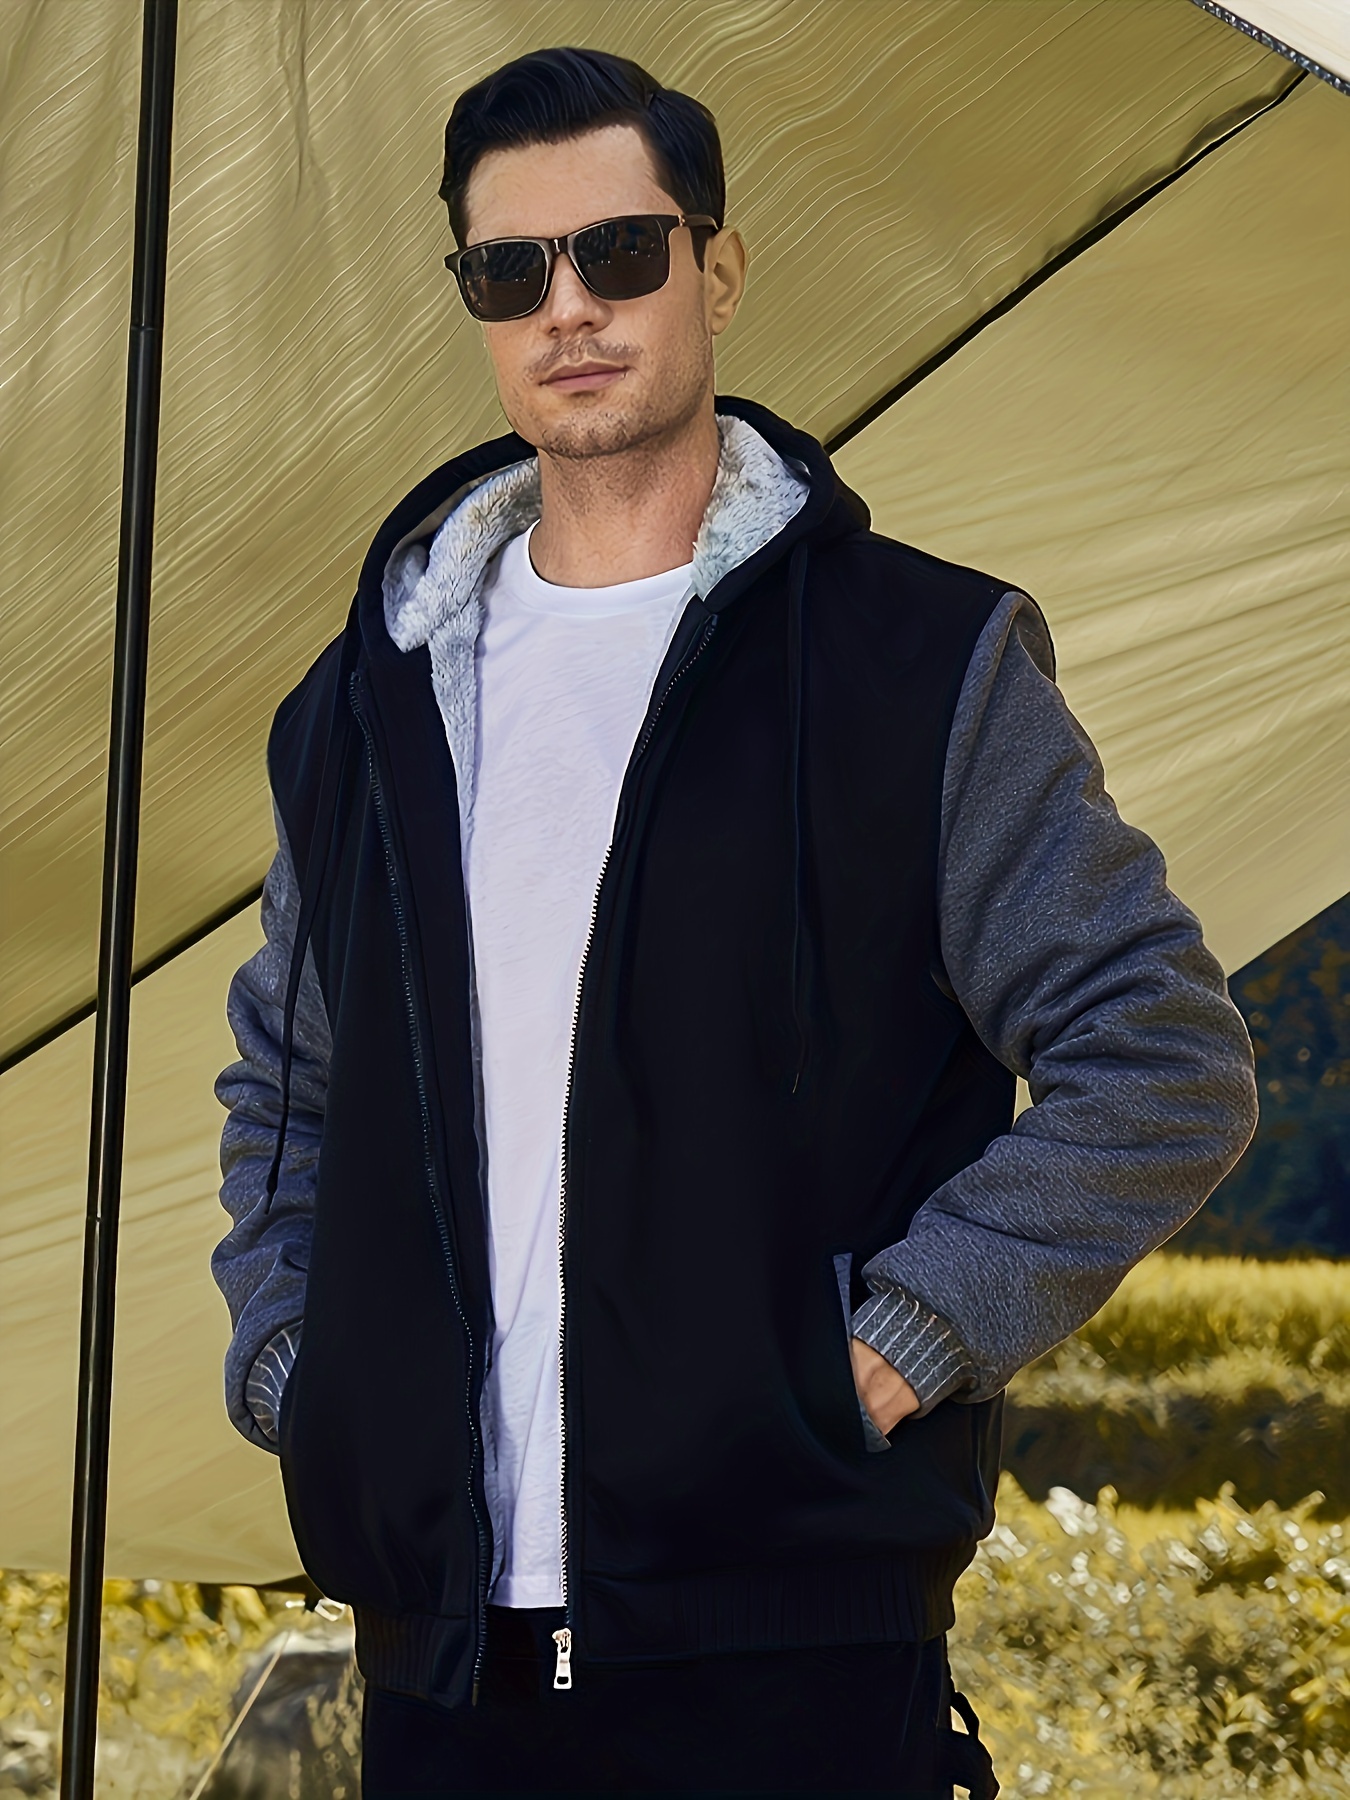 Men's Double-Sided Fleece Warm Hooded Zipper Casual Jacket Winter  Sweatshirt Fleece Sherpa Lined Hoodie Jackets